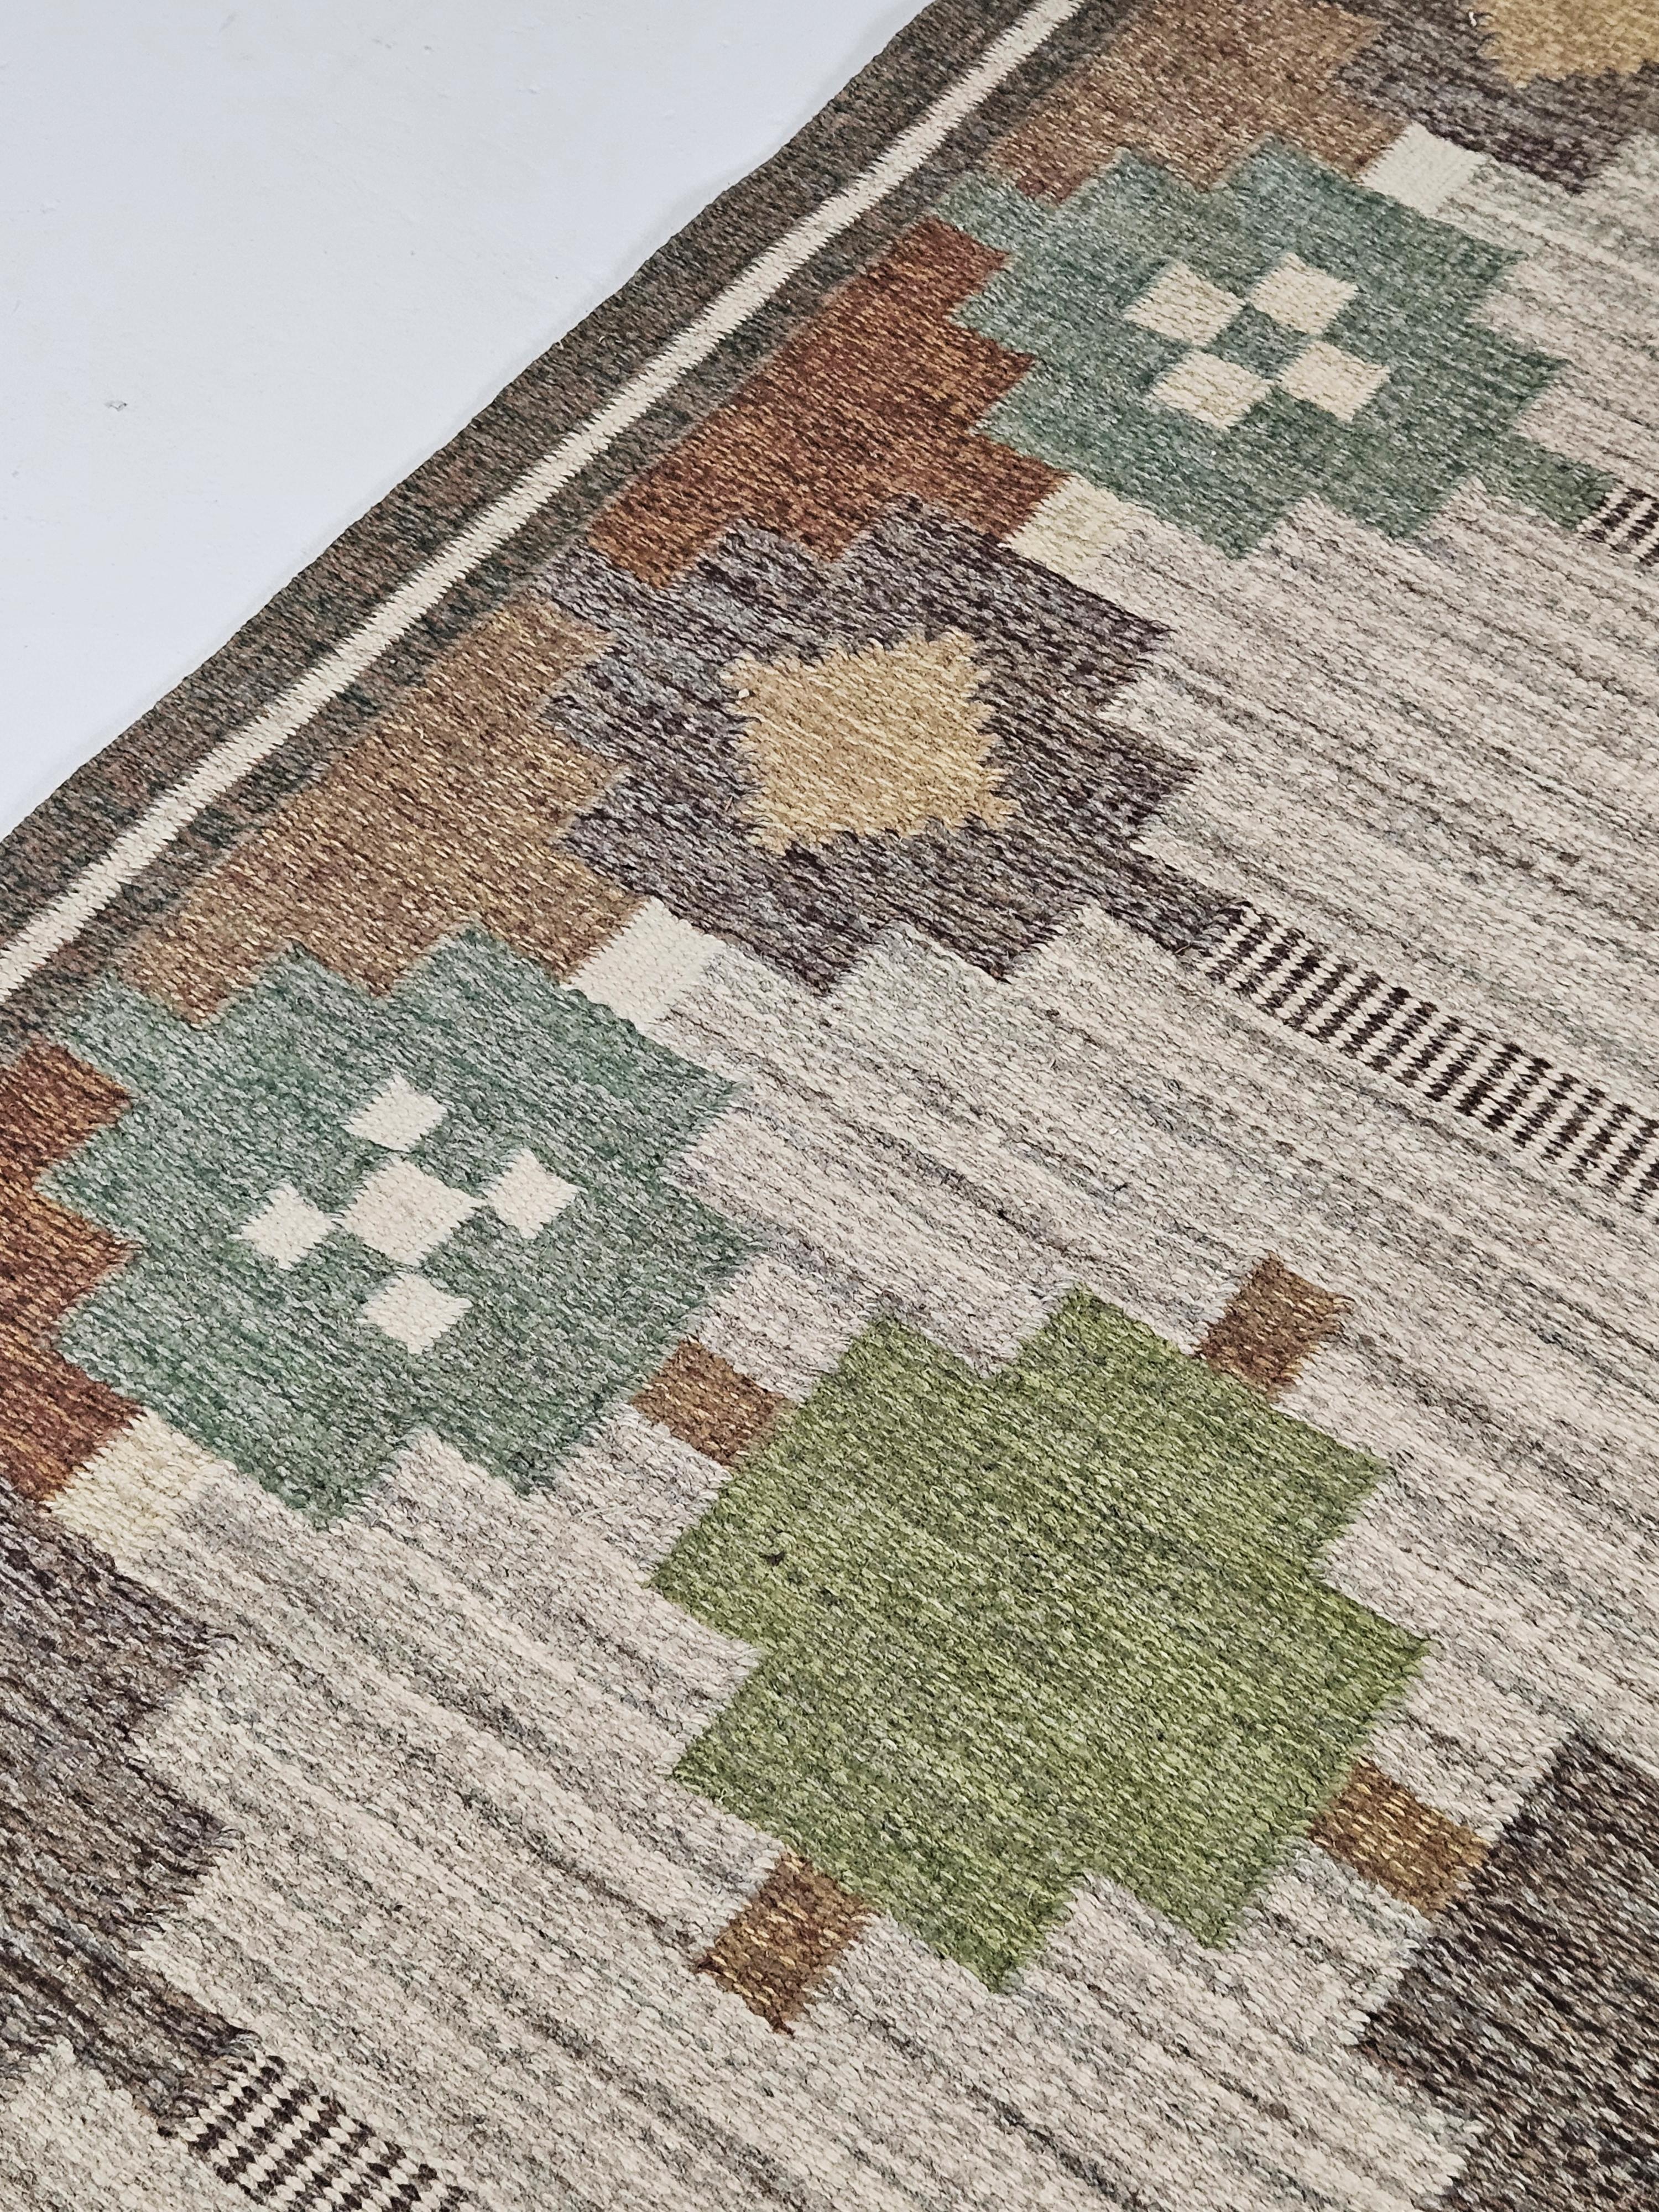 Swedish Flatweave carpet by Ulla Parkdahl, Sweden, 1950s